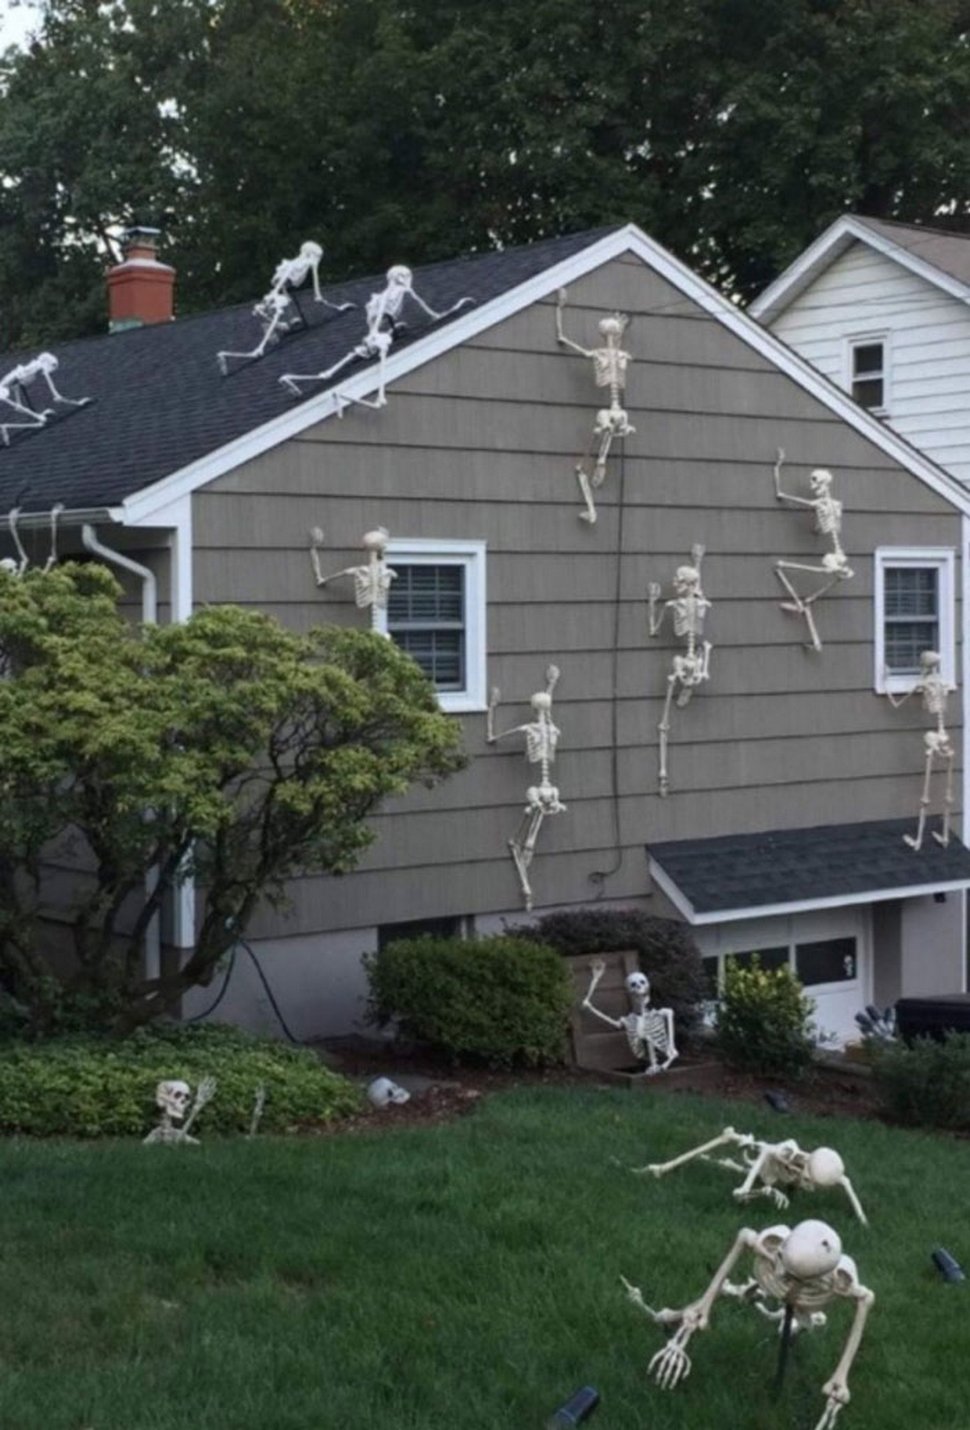 22 décorations d’Halloween qui sont à la fois drôles et effrayantes